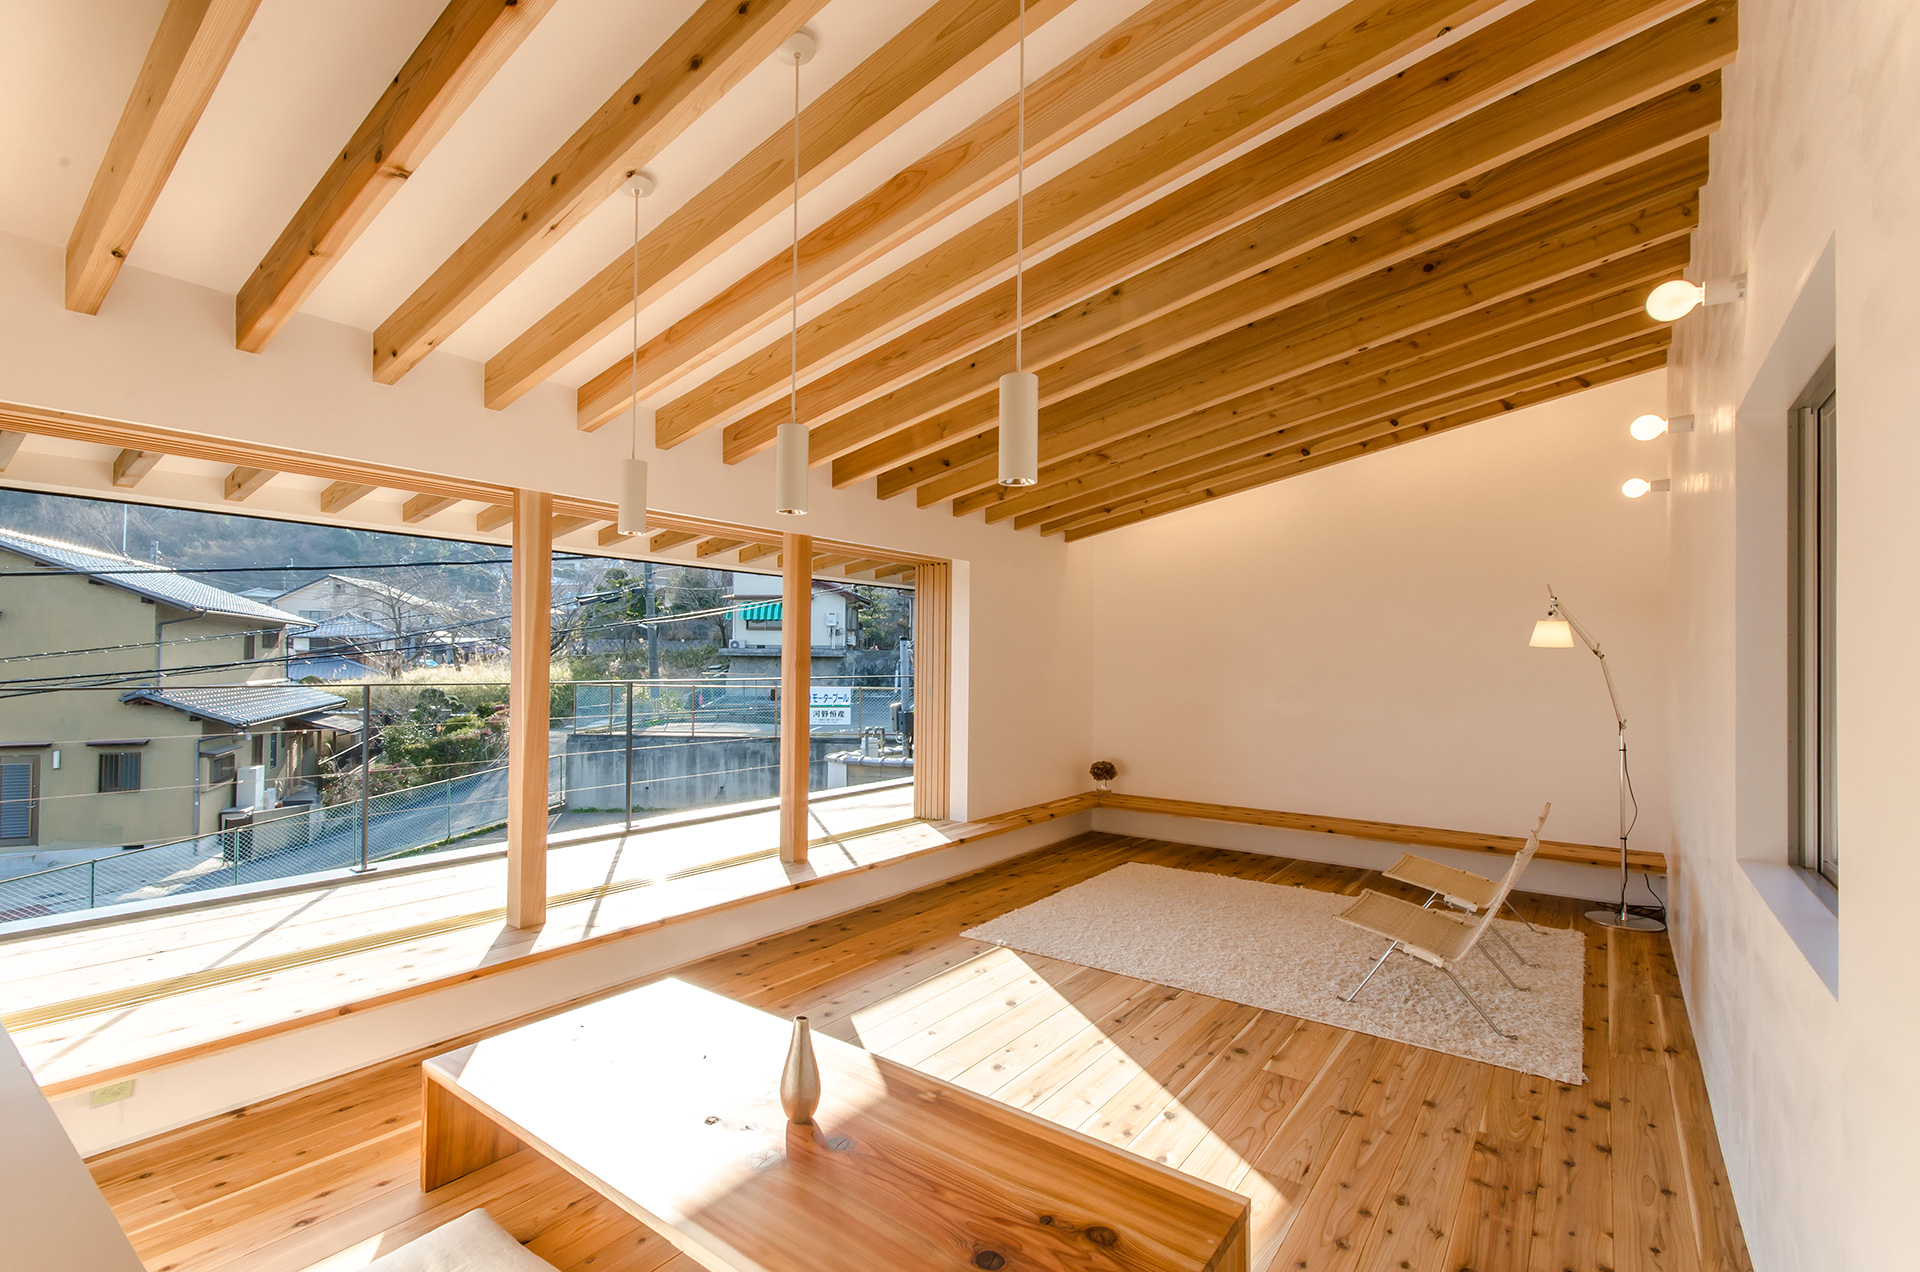 奈良県生駒市にある自然素材住宅、内観実例